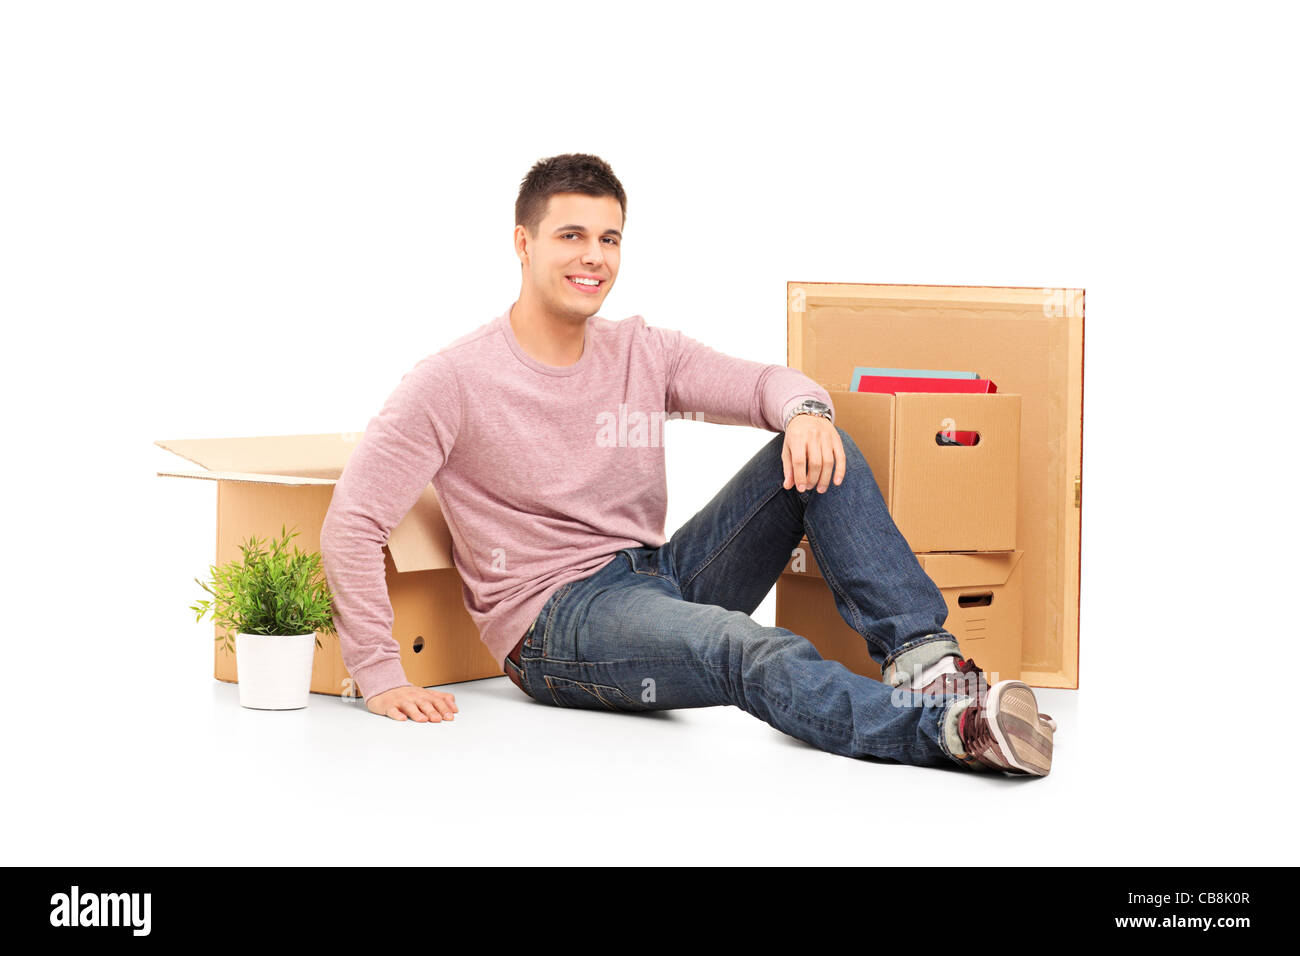 Uomo sorridente in appoggio da traslocare in una nuova casa con scatole intorno a lui Foto Stock